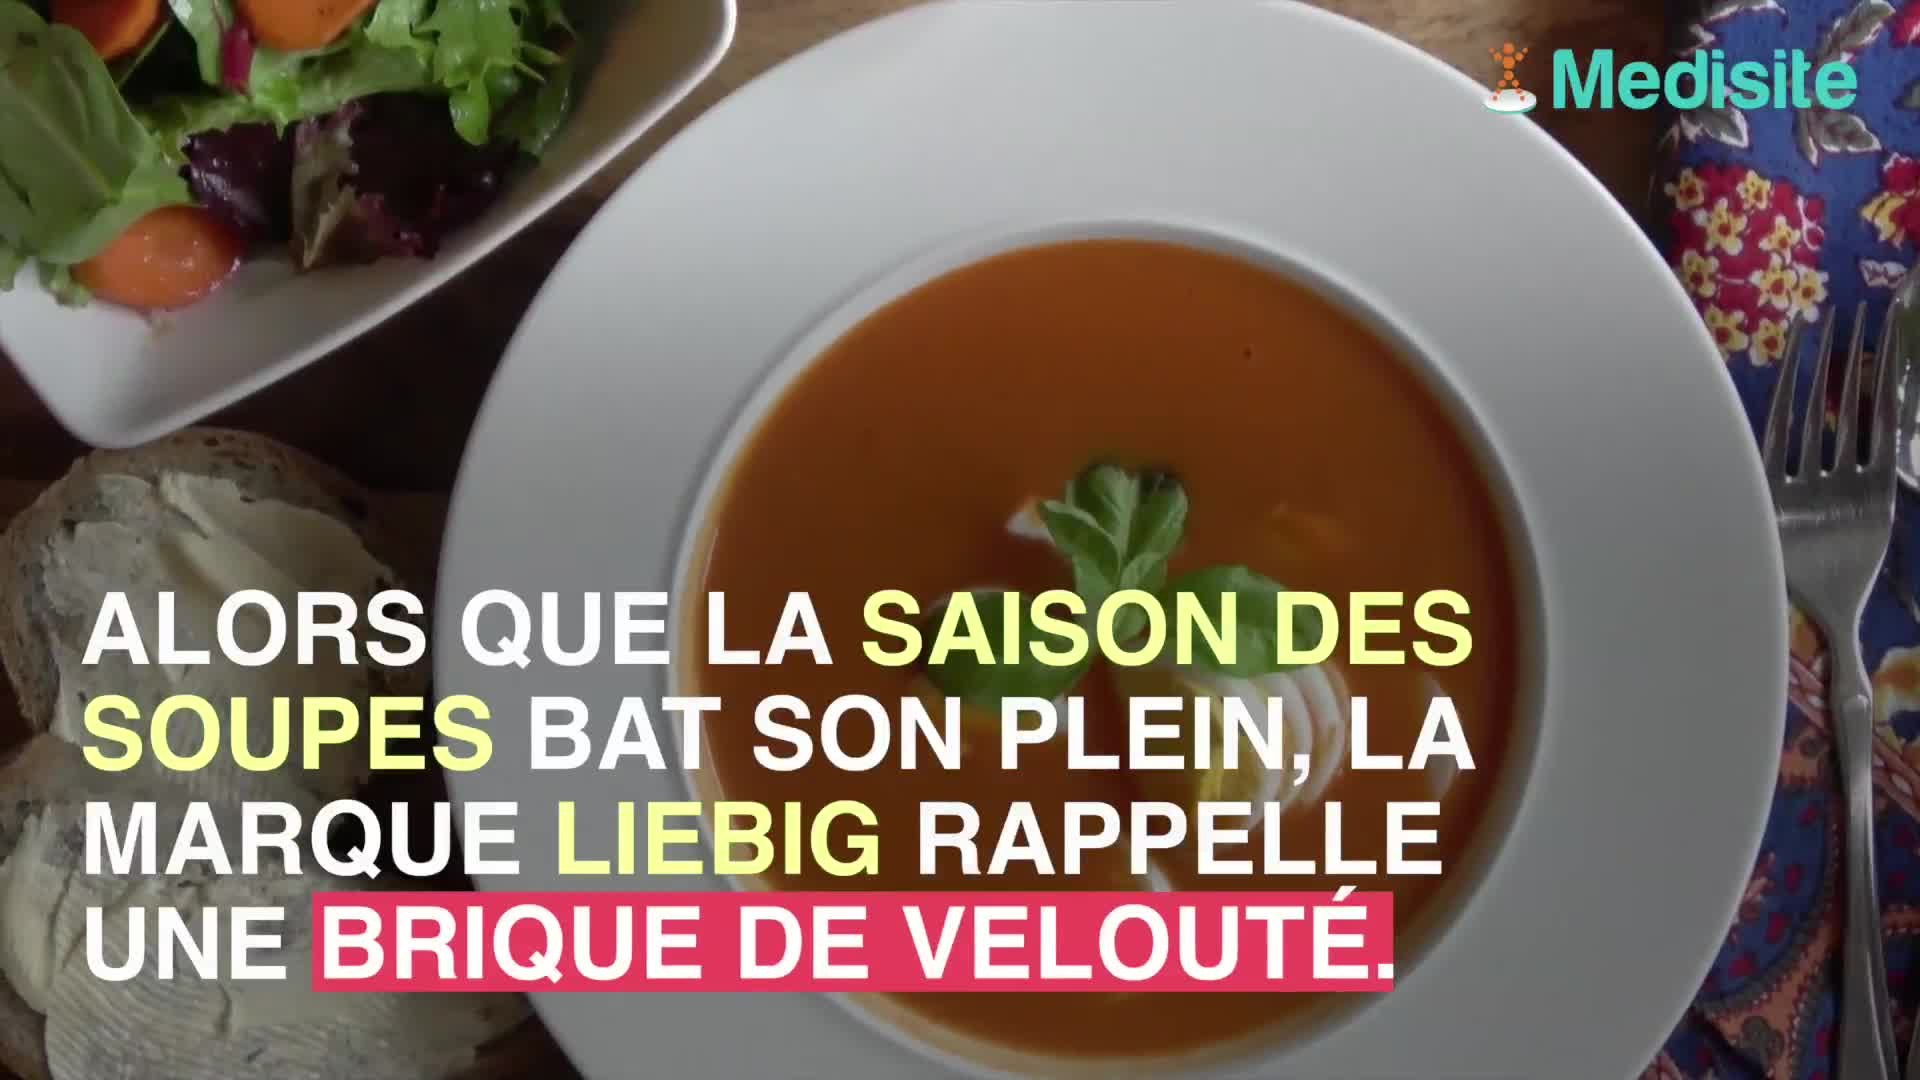 Soupes industrielles : la contre-attaque de Liebig sur Twitter - Le Parisien